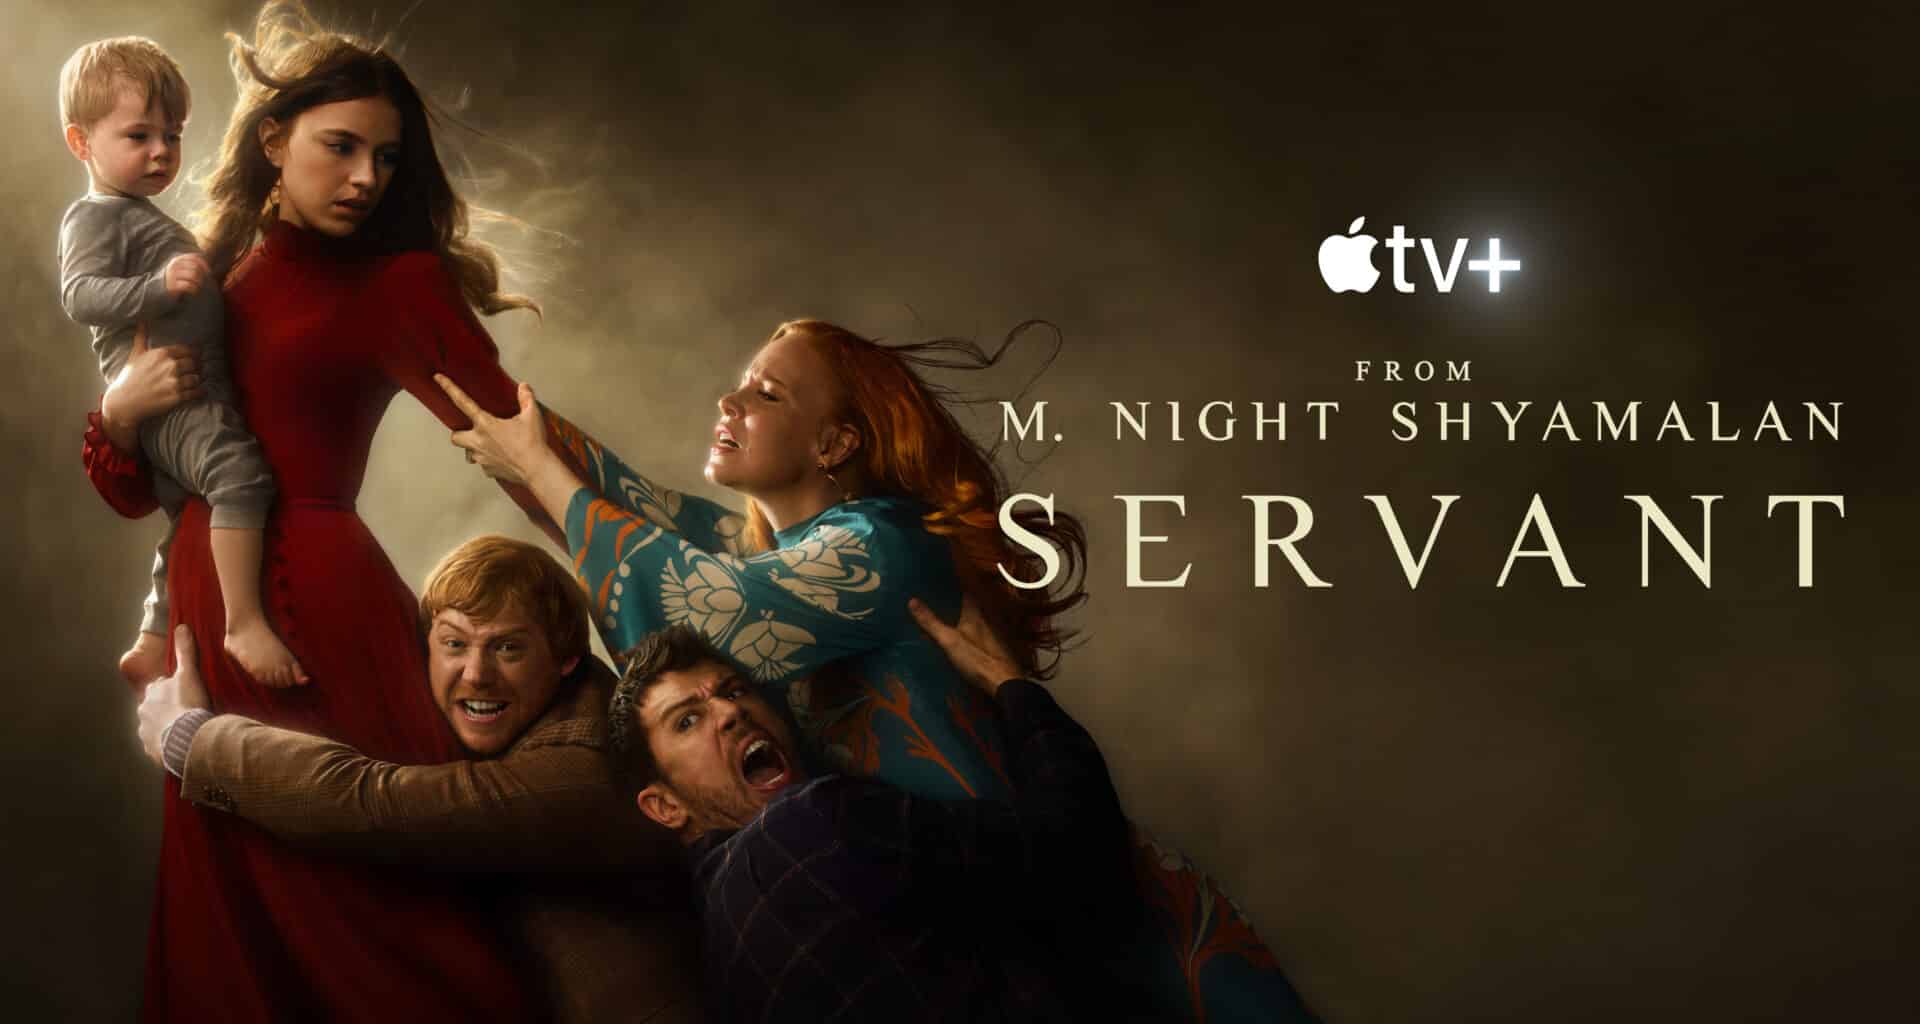 Quarta temporada de "Servant".